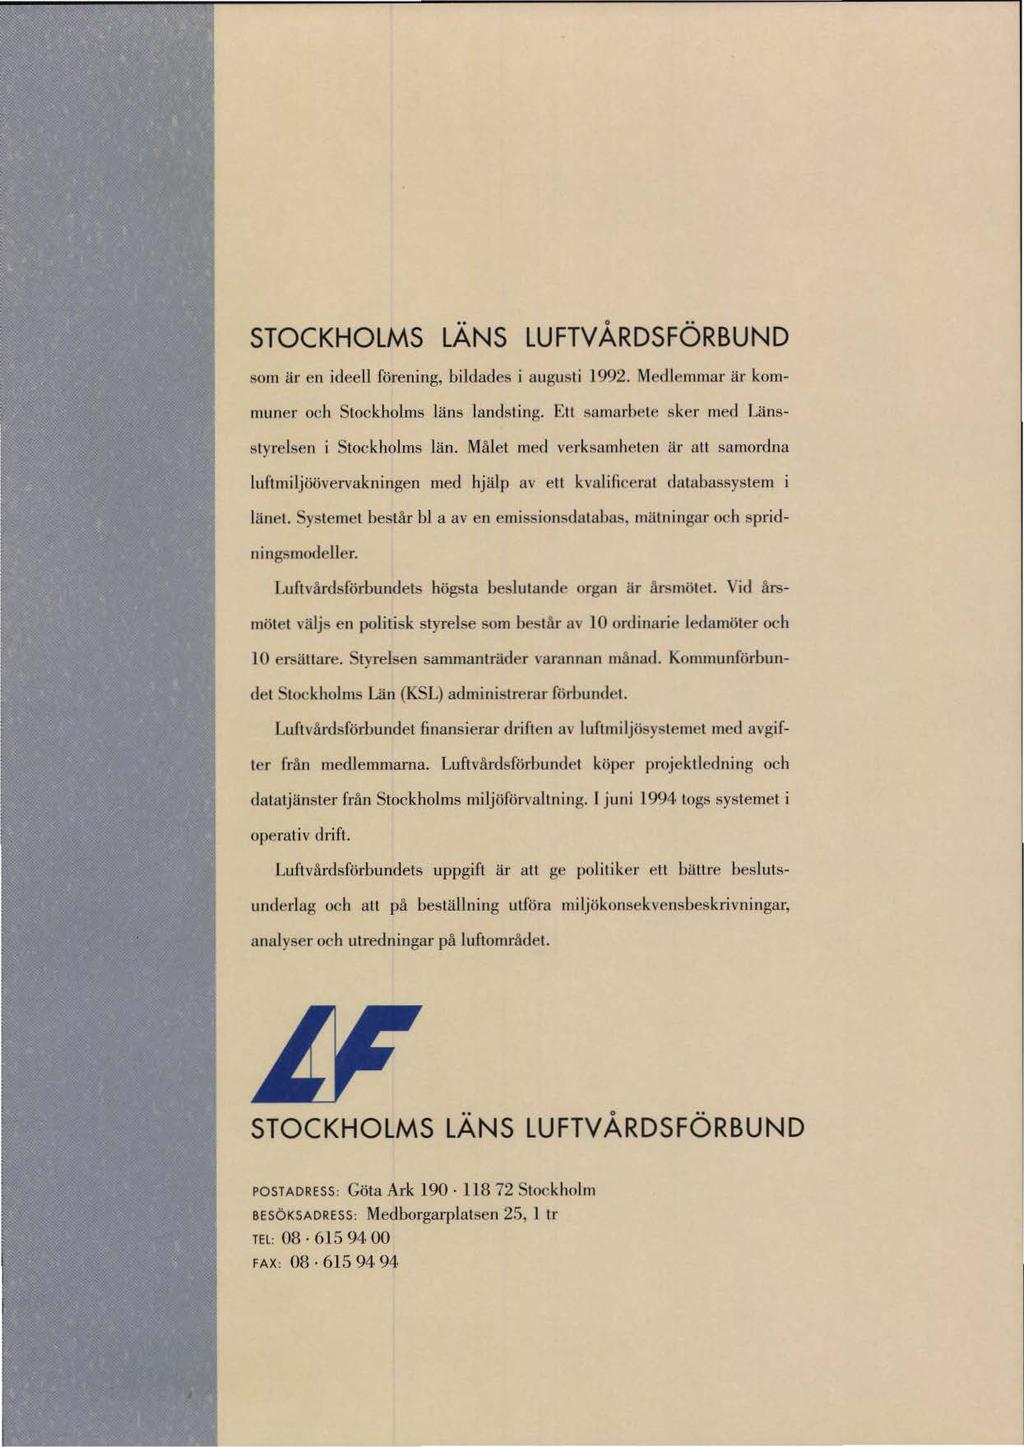 STOCKHOLMS LANS LUFTV ÅRDSFÖRBUND sorn är en ideell förening, bildades i augusti 1992. Medlemmar är kommuner och Stockholms läns lands t i ng. F:u!'lamarhete sker med Länsstyrelsen i Stockholms län.